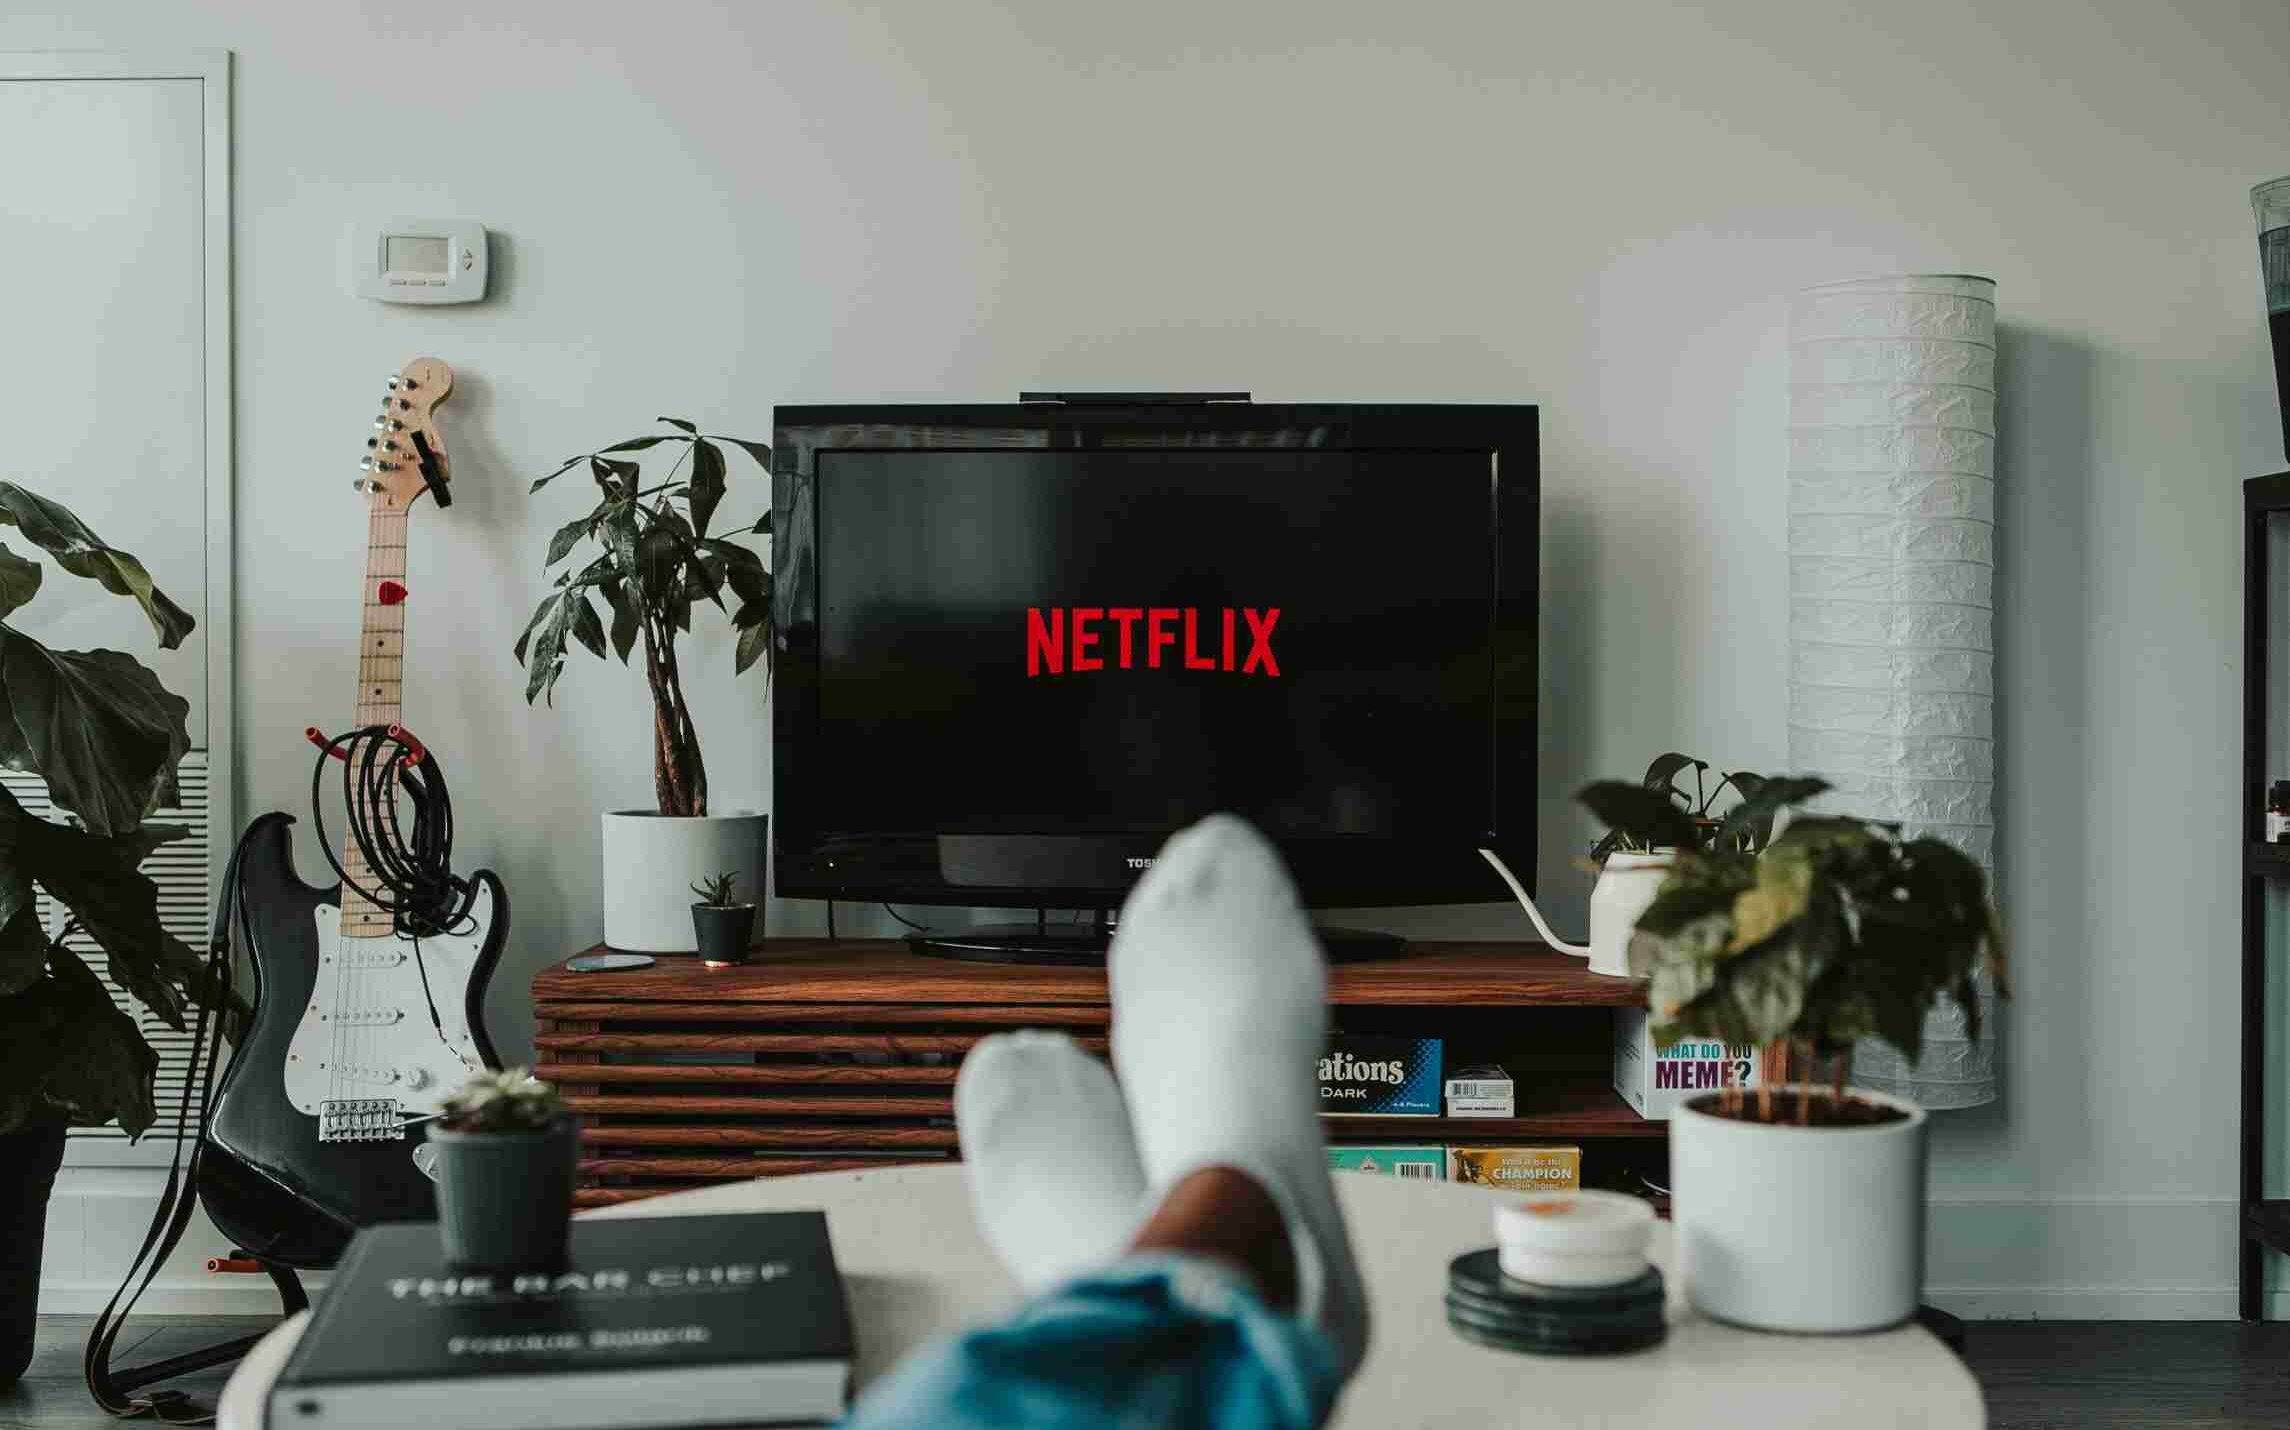 movie marathon, Netflix, new year's day